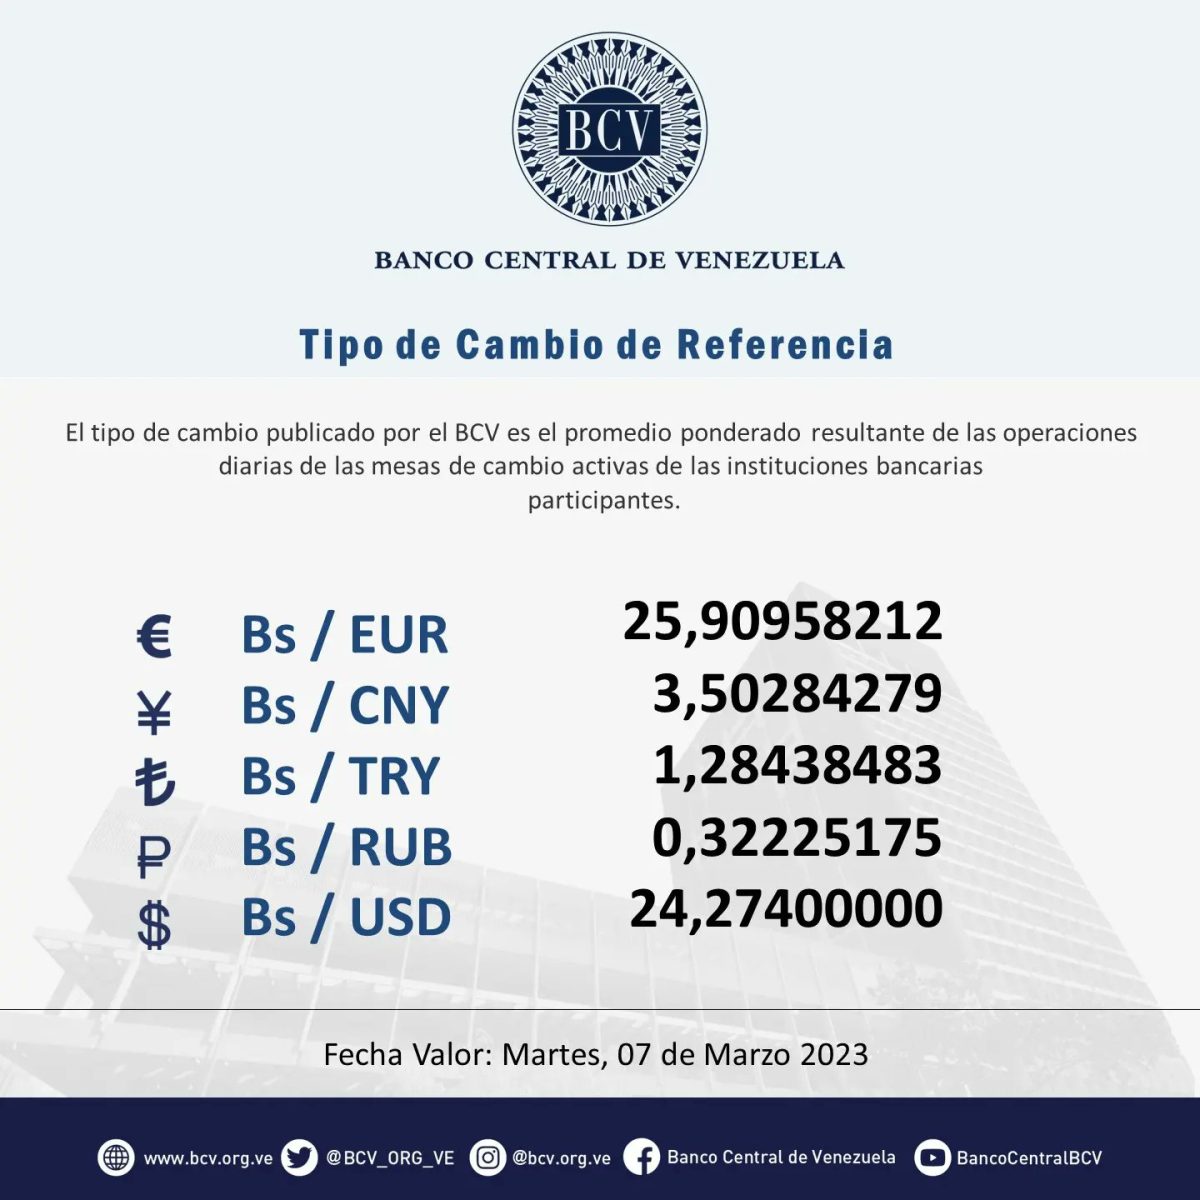 dolartoday en venezuela precio del dolar este martes 7 de marzo de 2023 laverdaddemonagas.com bcv666